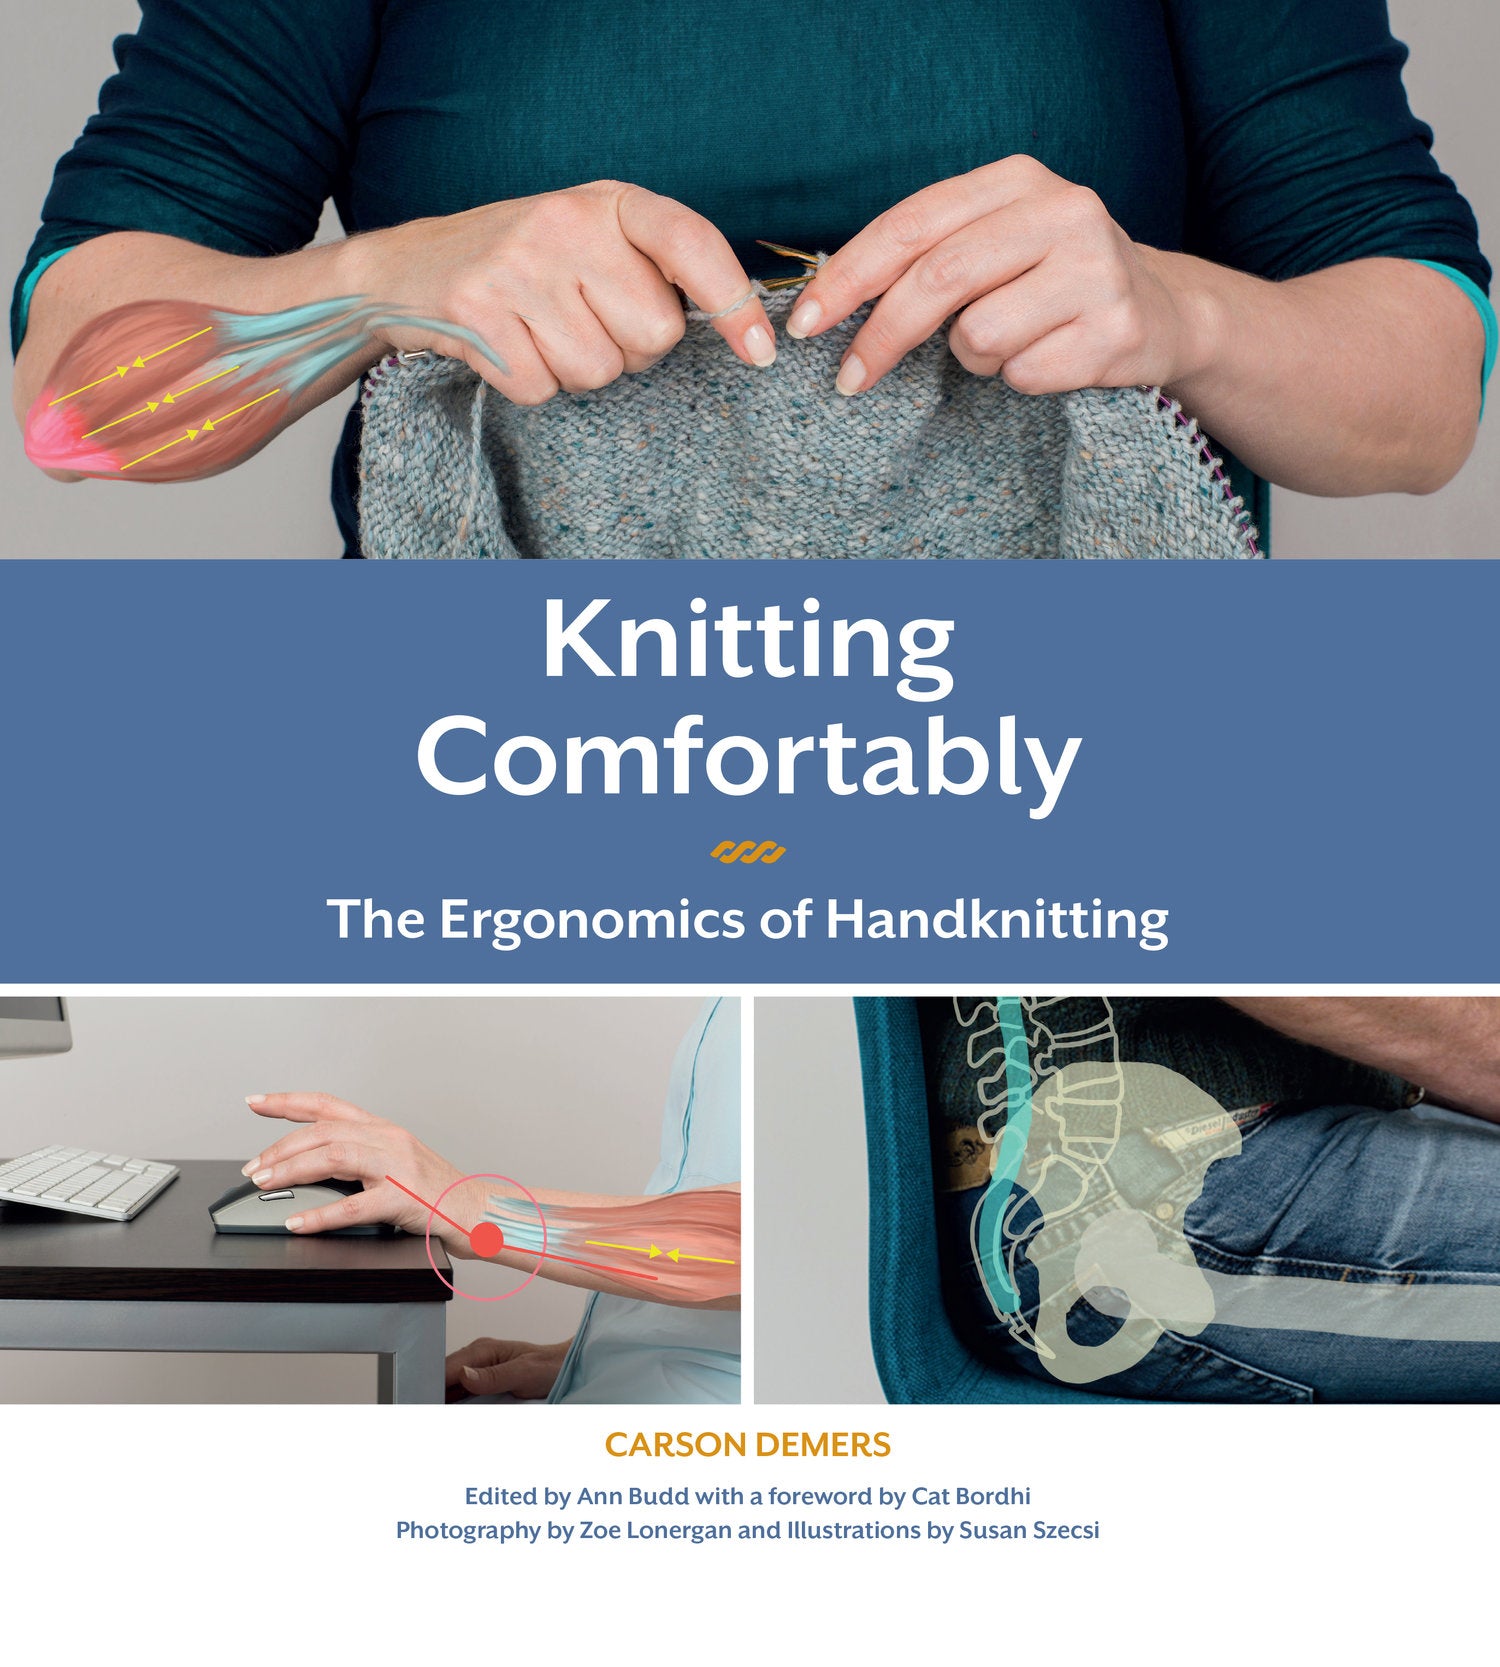 Ergonomics of Knitting